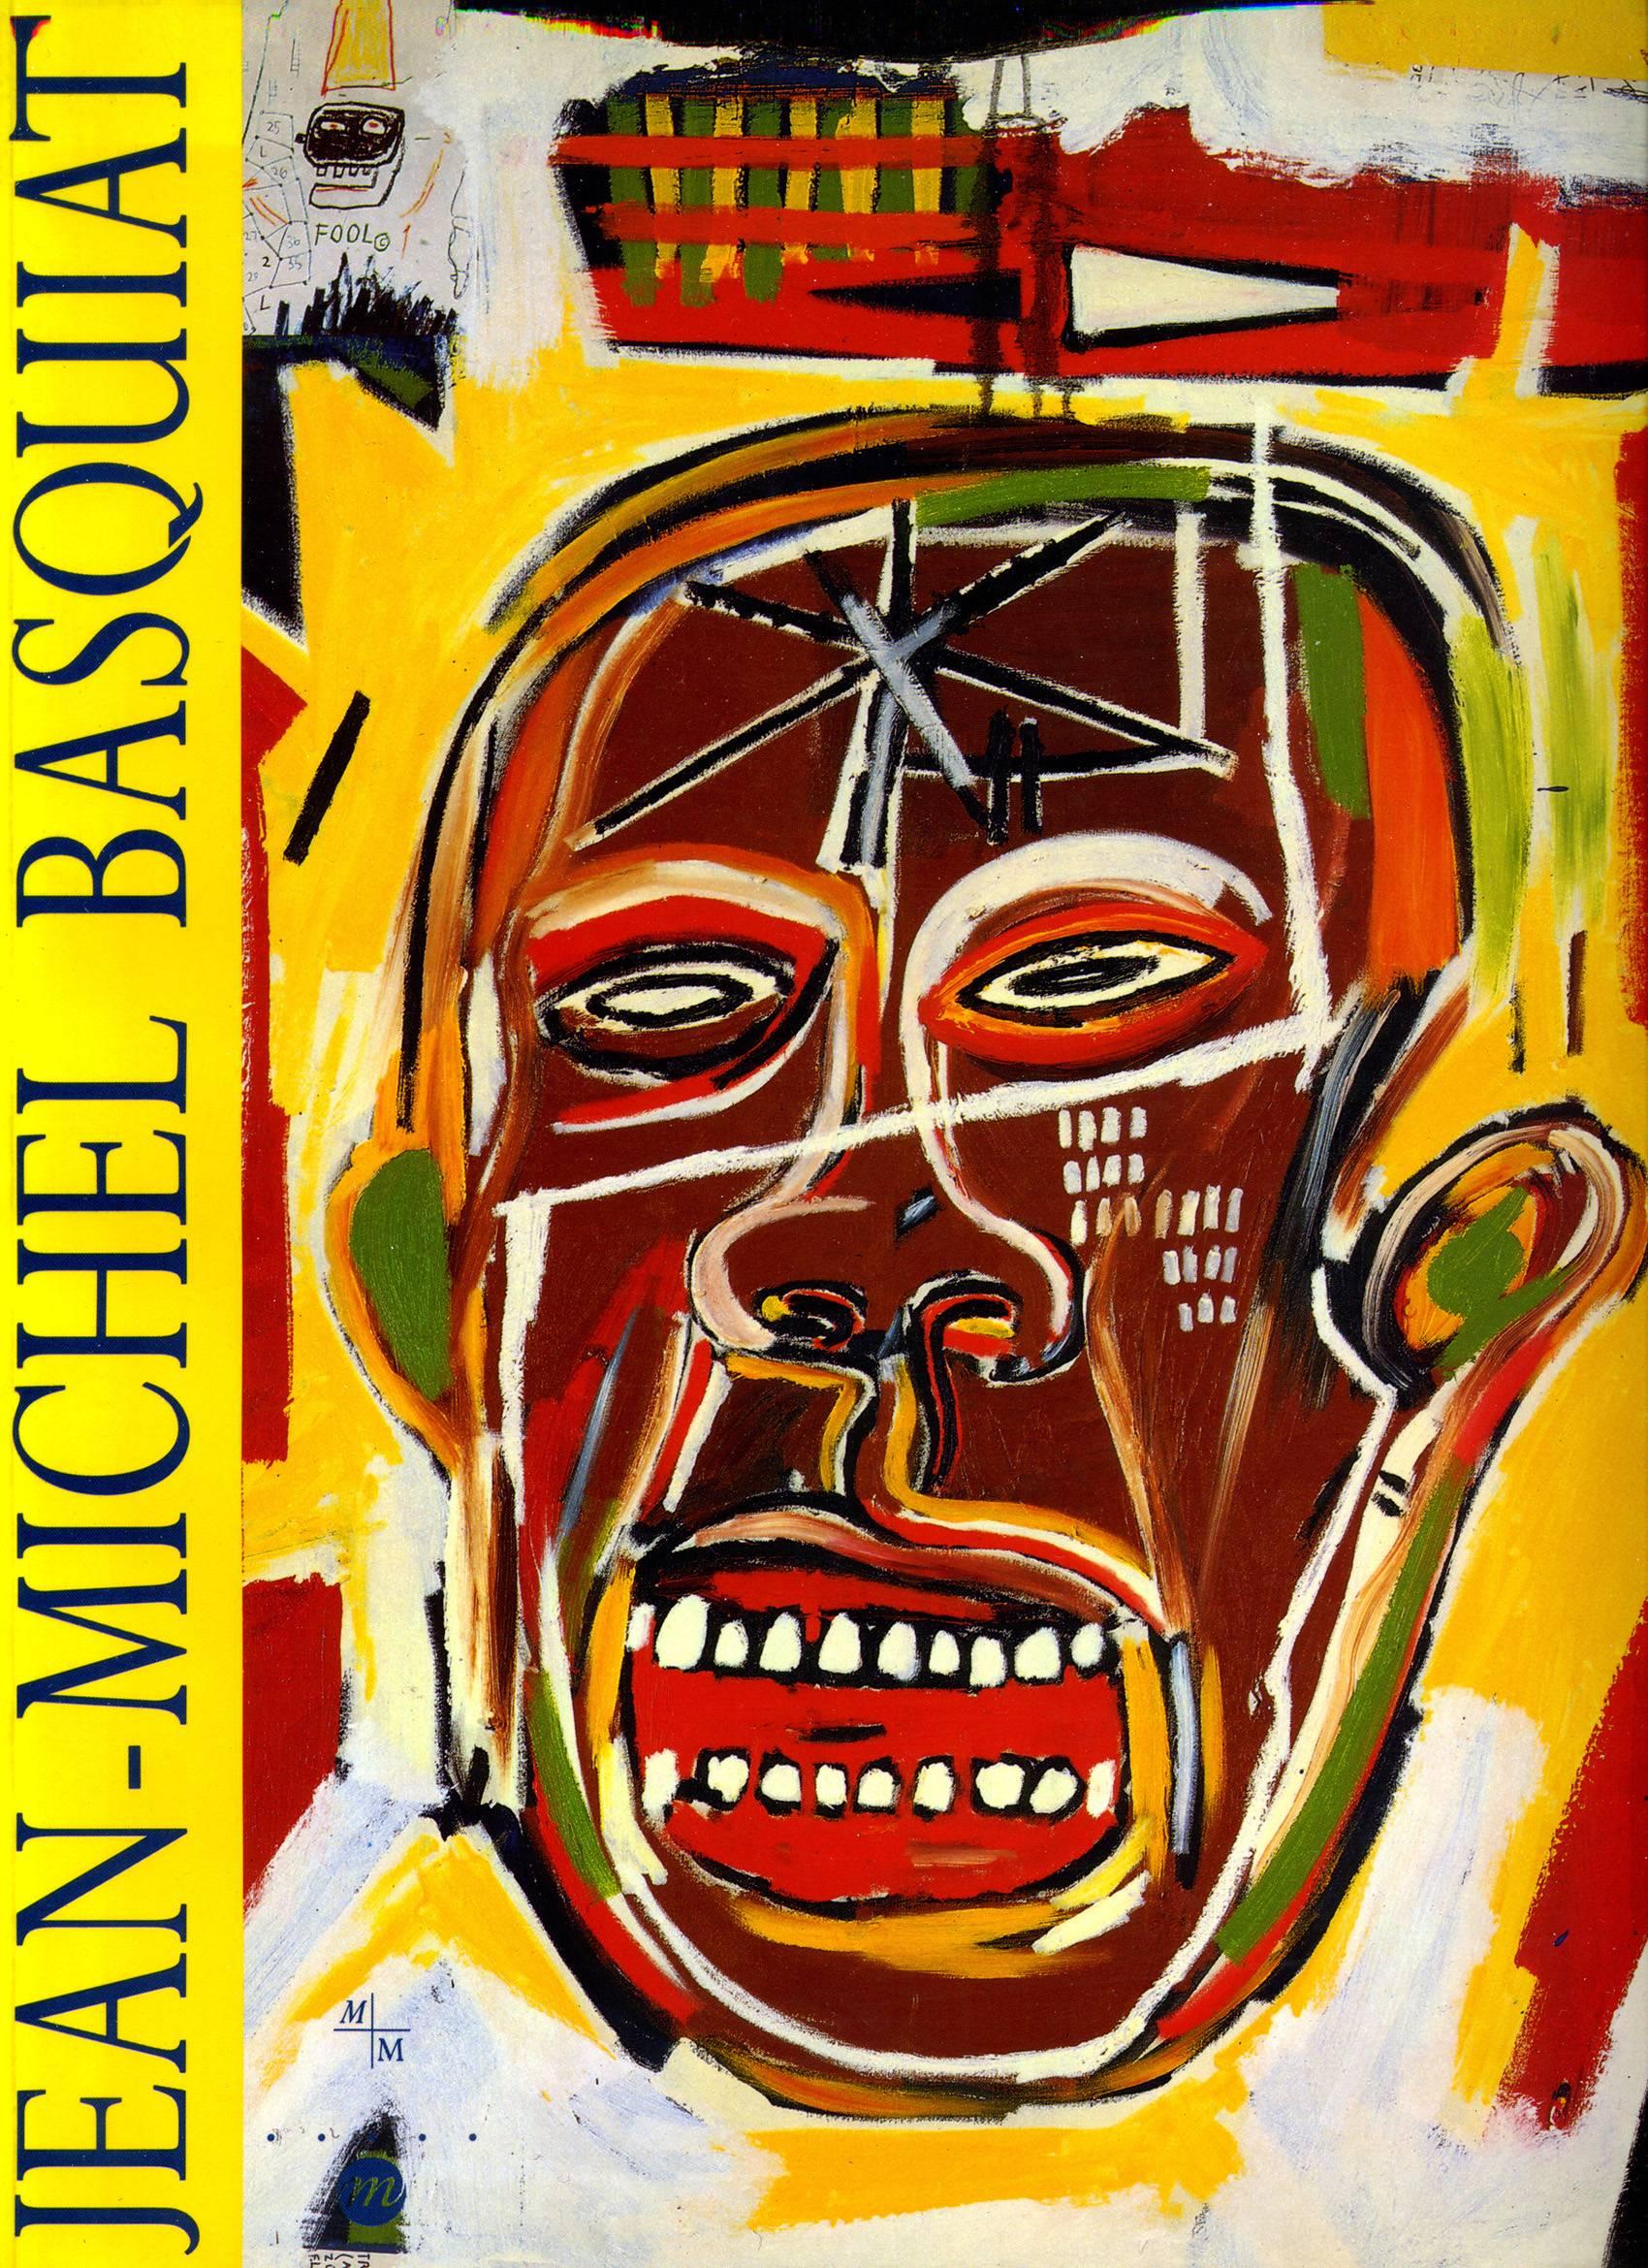 Basquiat Marseille exhibition catalog - Art by after Jean-Michel Basquiat